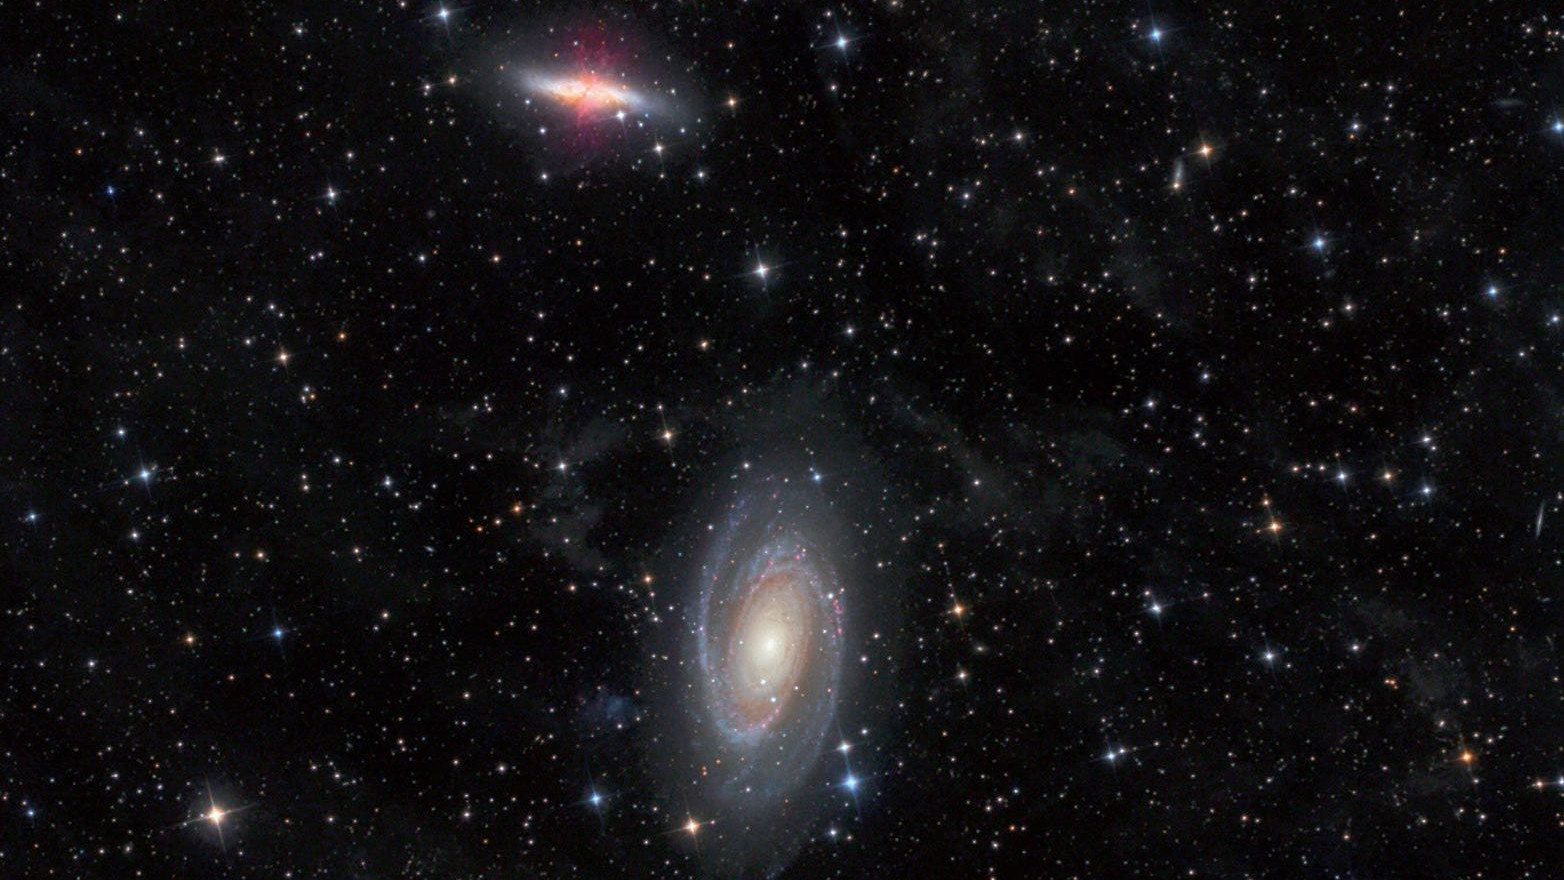 Galaxerna M 81 och M 82 i stjärnbilden Stora björnen, tagna med ett 4,5 tums Newton-teleskop med en brännvidd på 440 mm. Michael Deger / CCD Guide